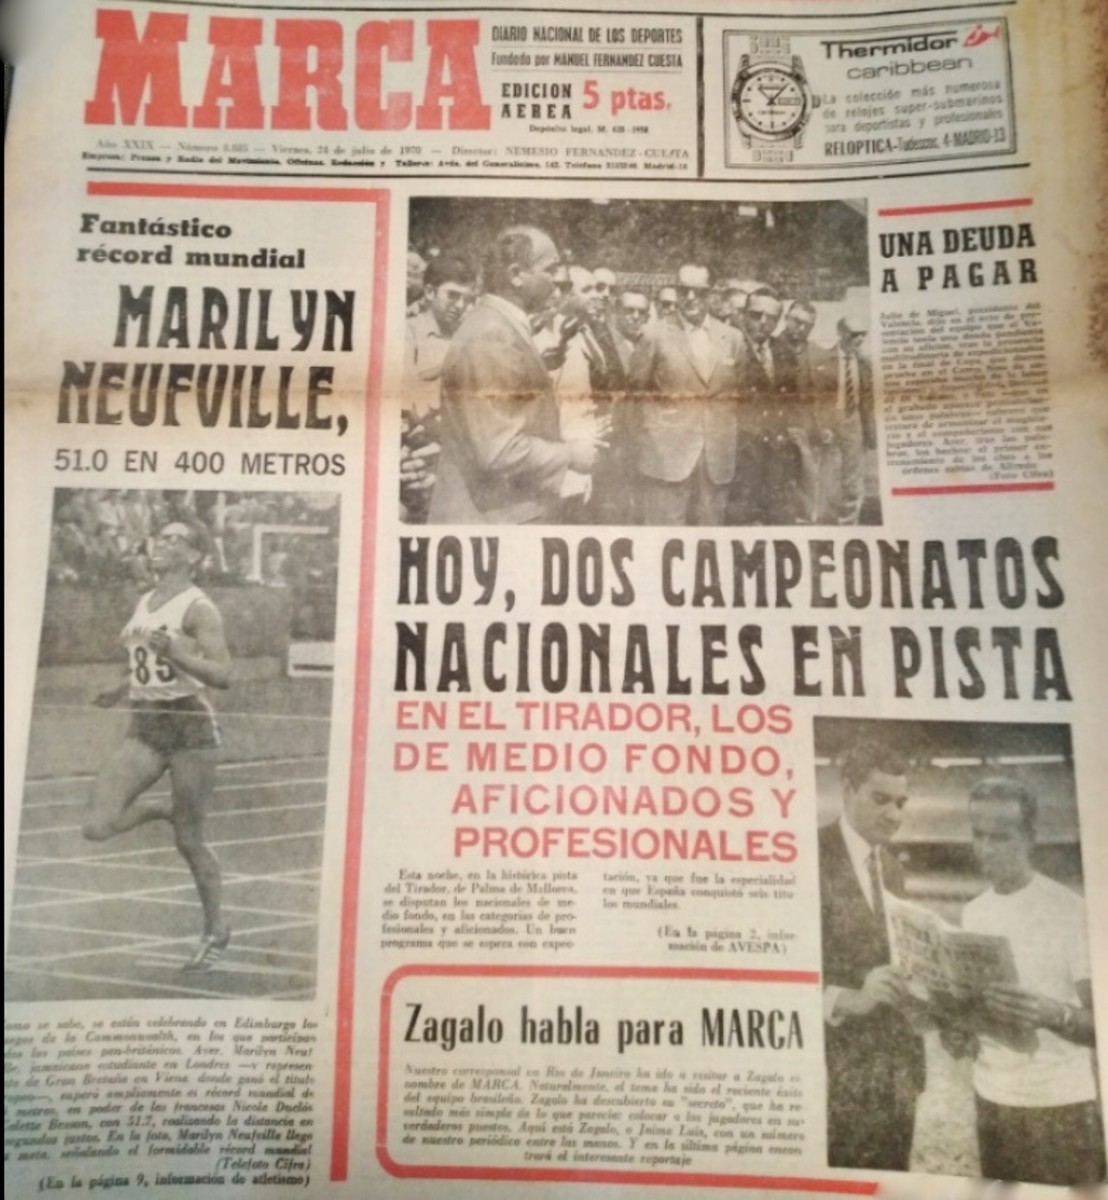 Spanish newspaper headines